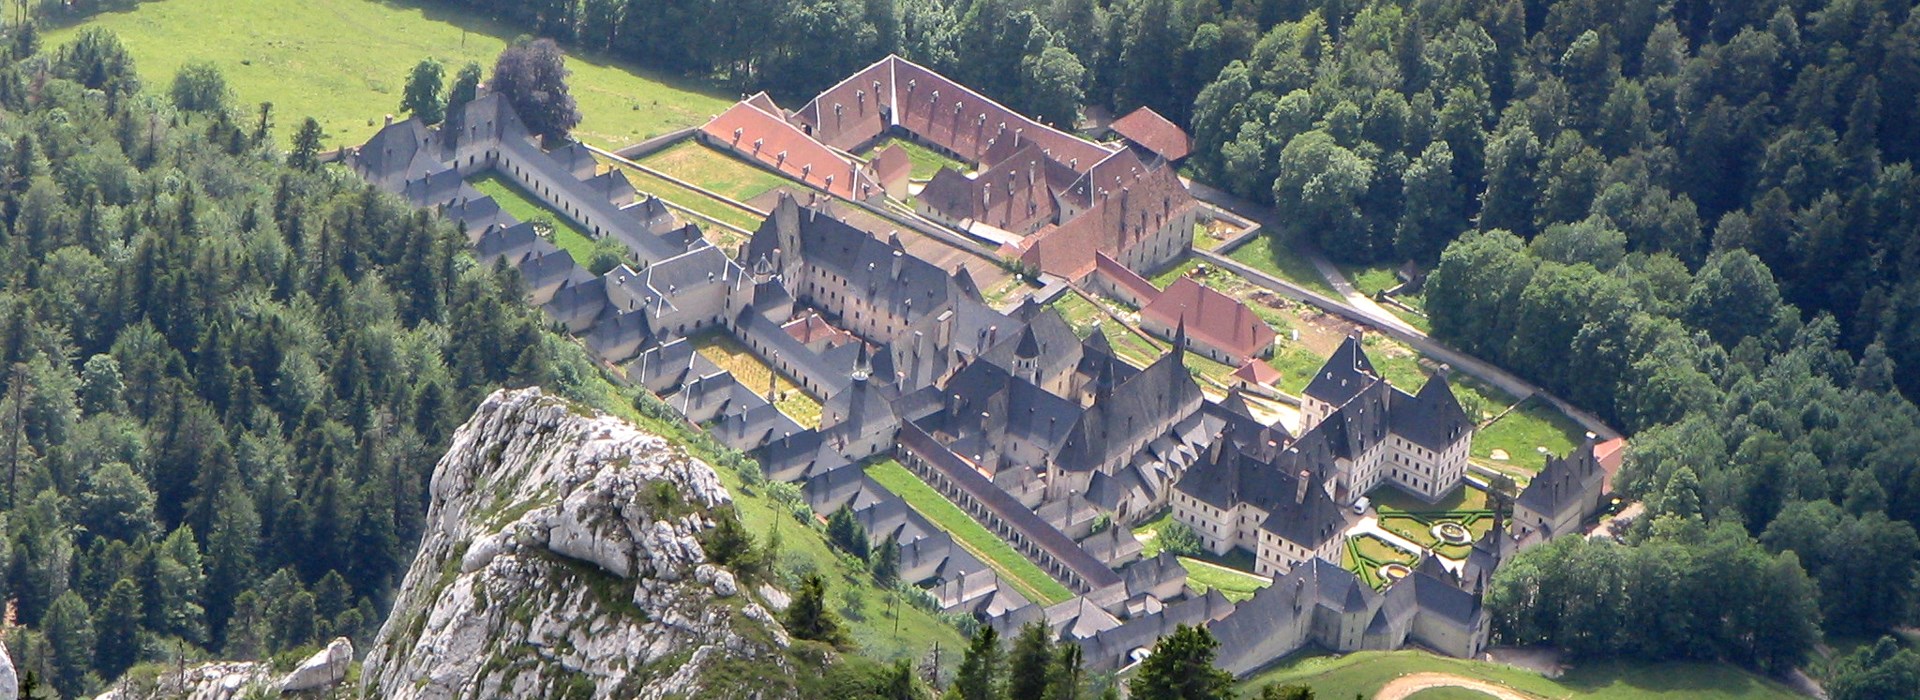 Visiter Le monastère de la grande chartreuse et son musée - Rhône-Alpes